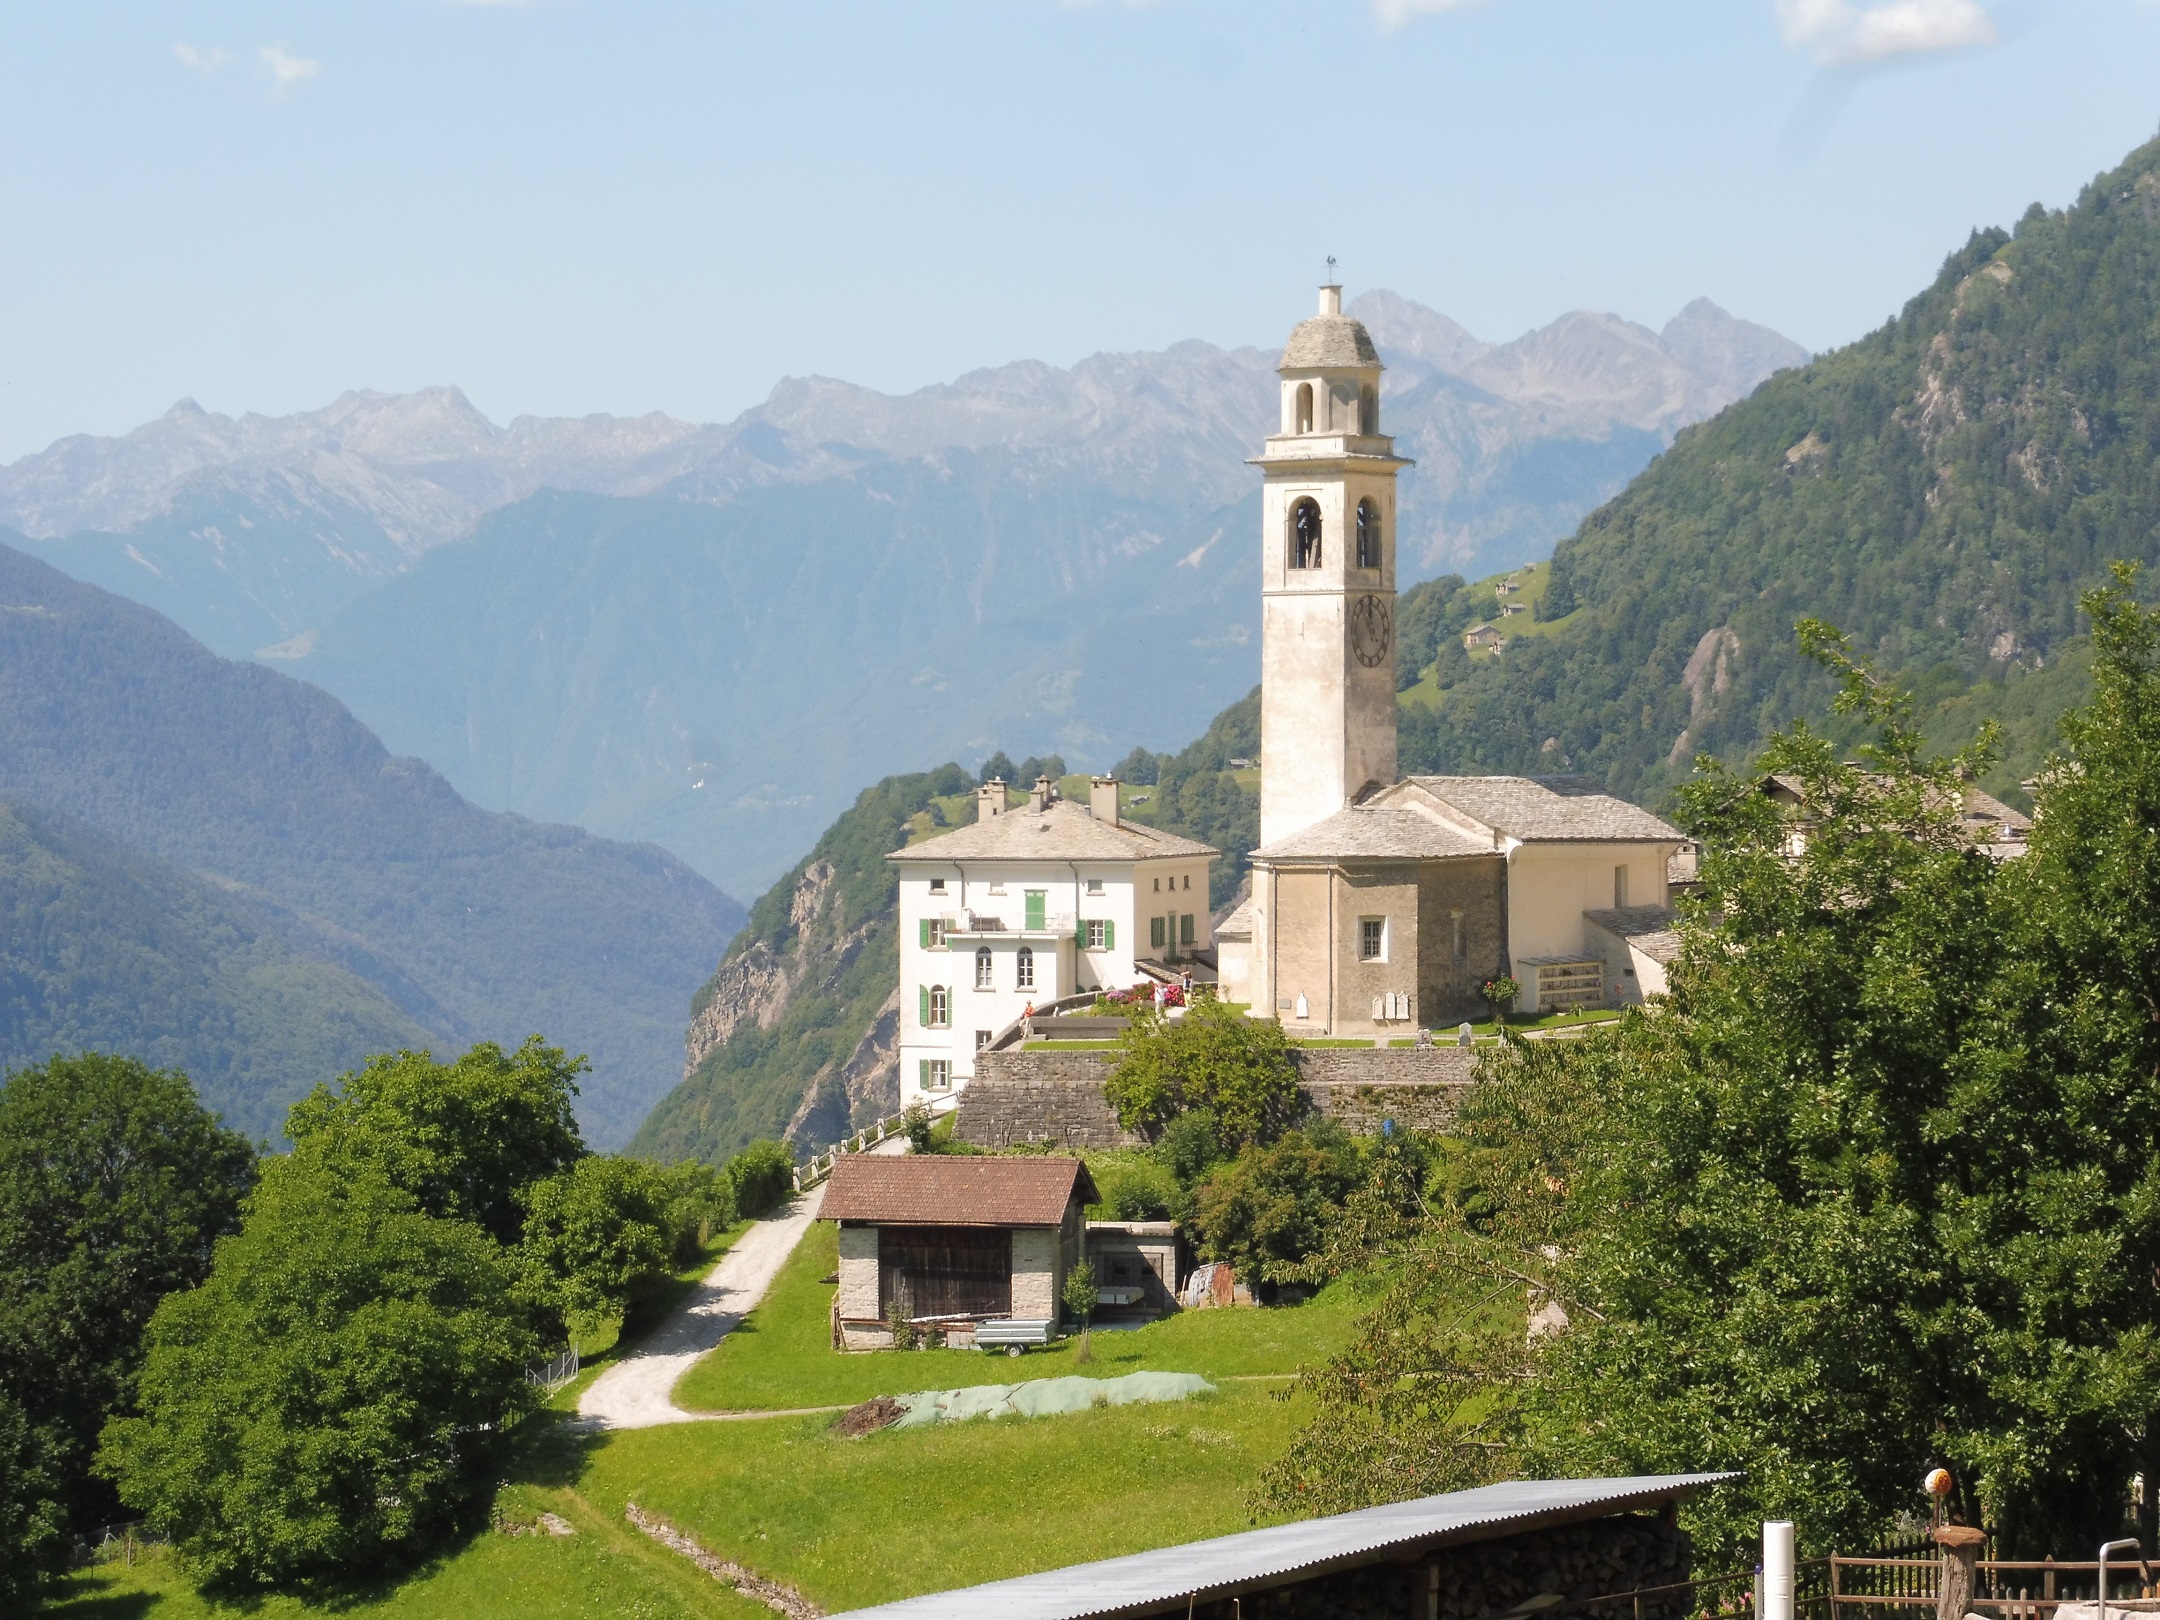 Soglio református temploma kelet felől fotózva, vagyis olasz hegyekkel a háttérben